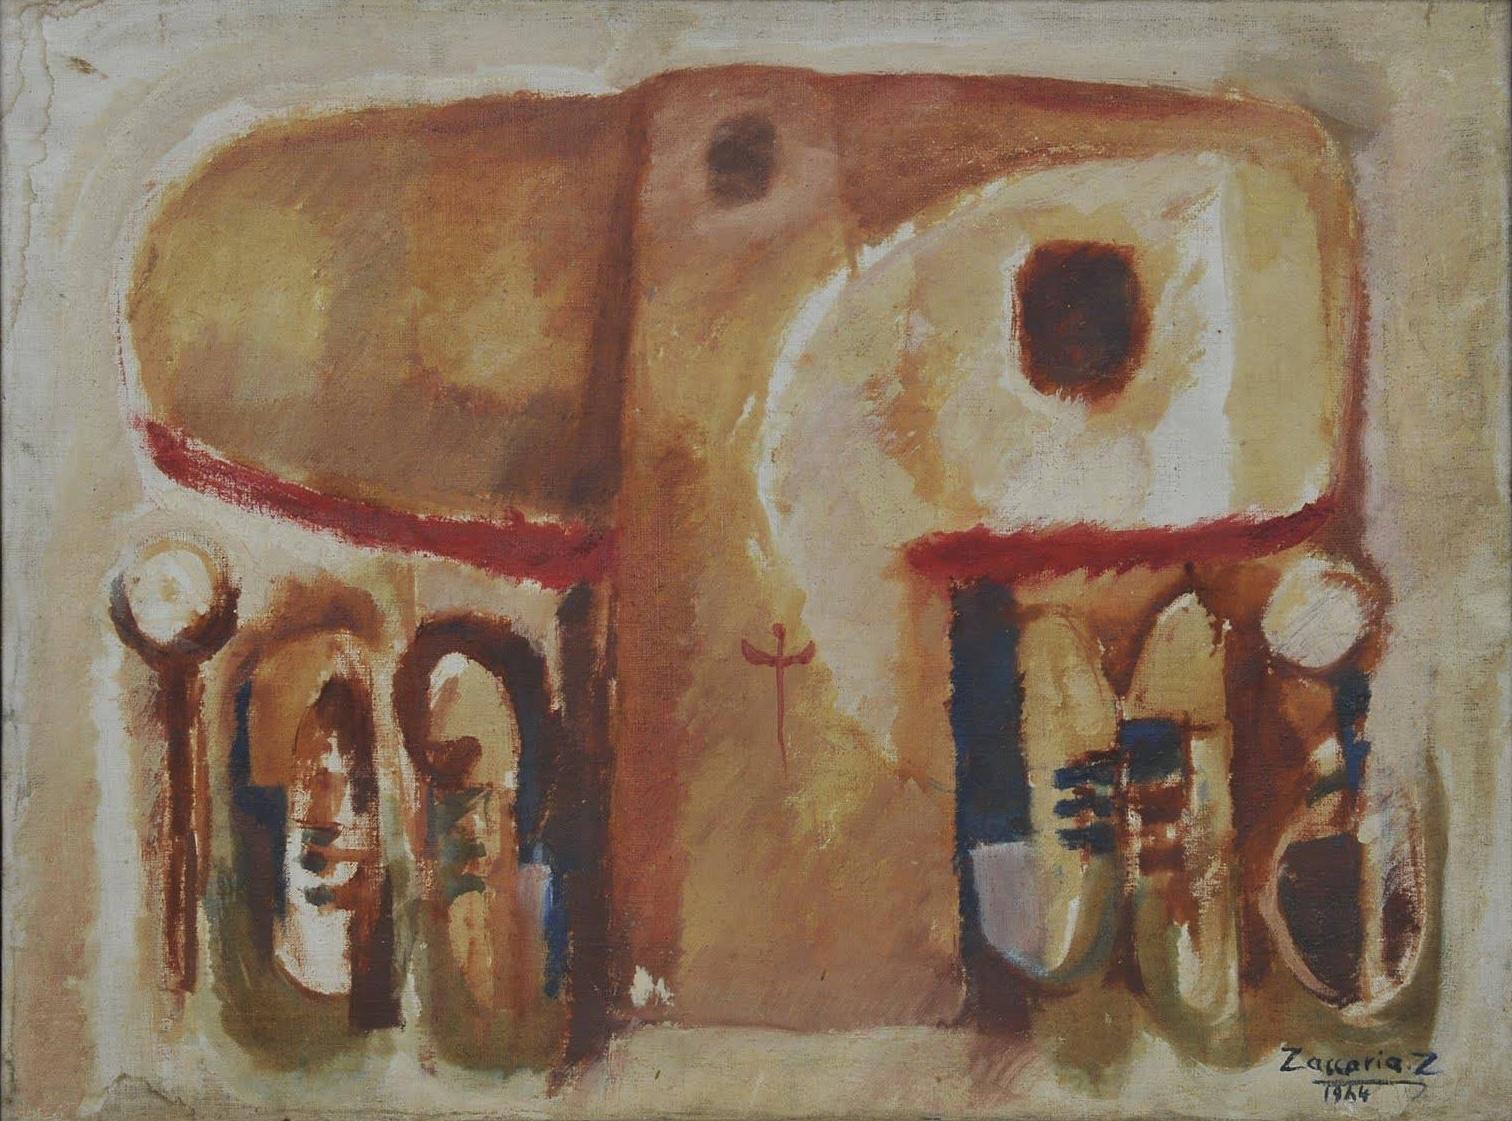 Peinture à l'huile abstraite 24" x 31,5" pouces (1984) de Zaccaria Zeini

Support : huile sur toile 
Signé et daté 

Livré dans son ancien cadre d'origine. 

Zaccaria El Zeini (1932 - 1993) a grandi dans le quartier populaire de Sayyida Zienab, dans